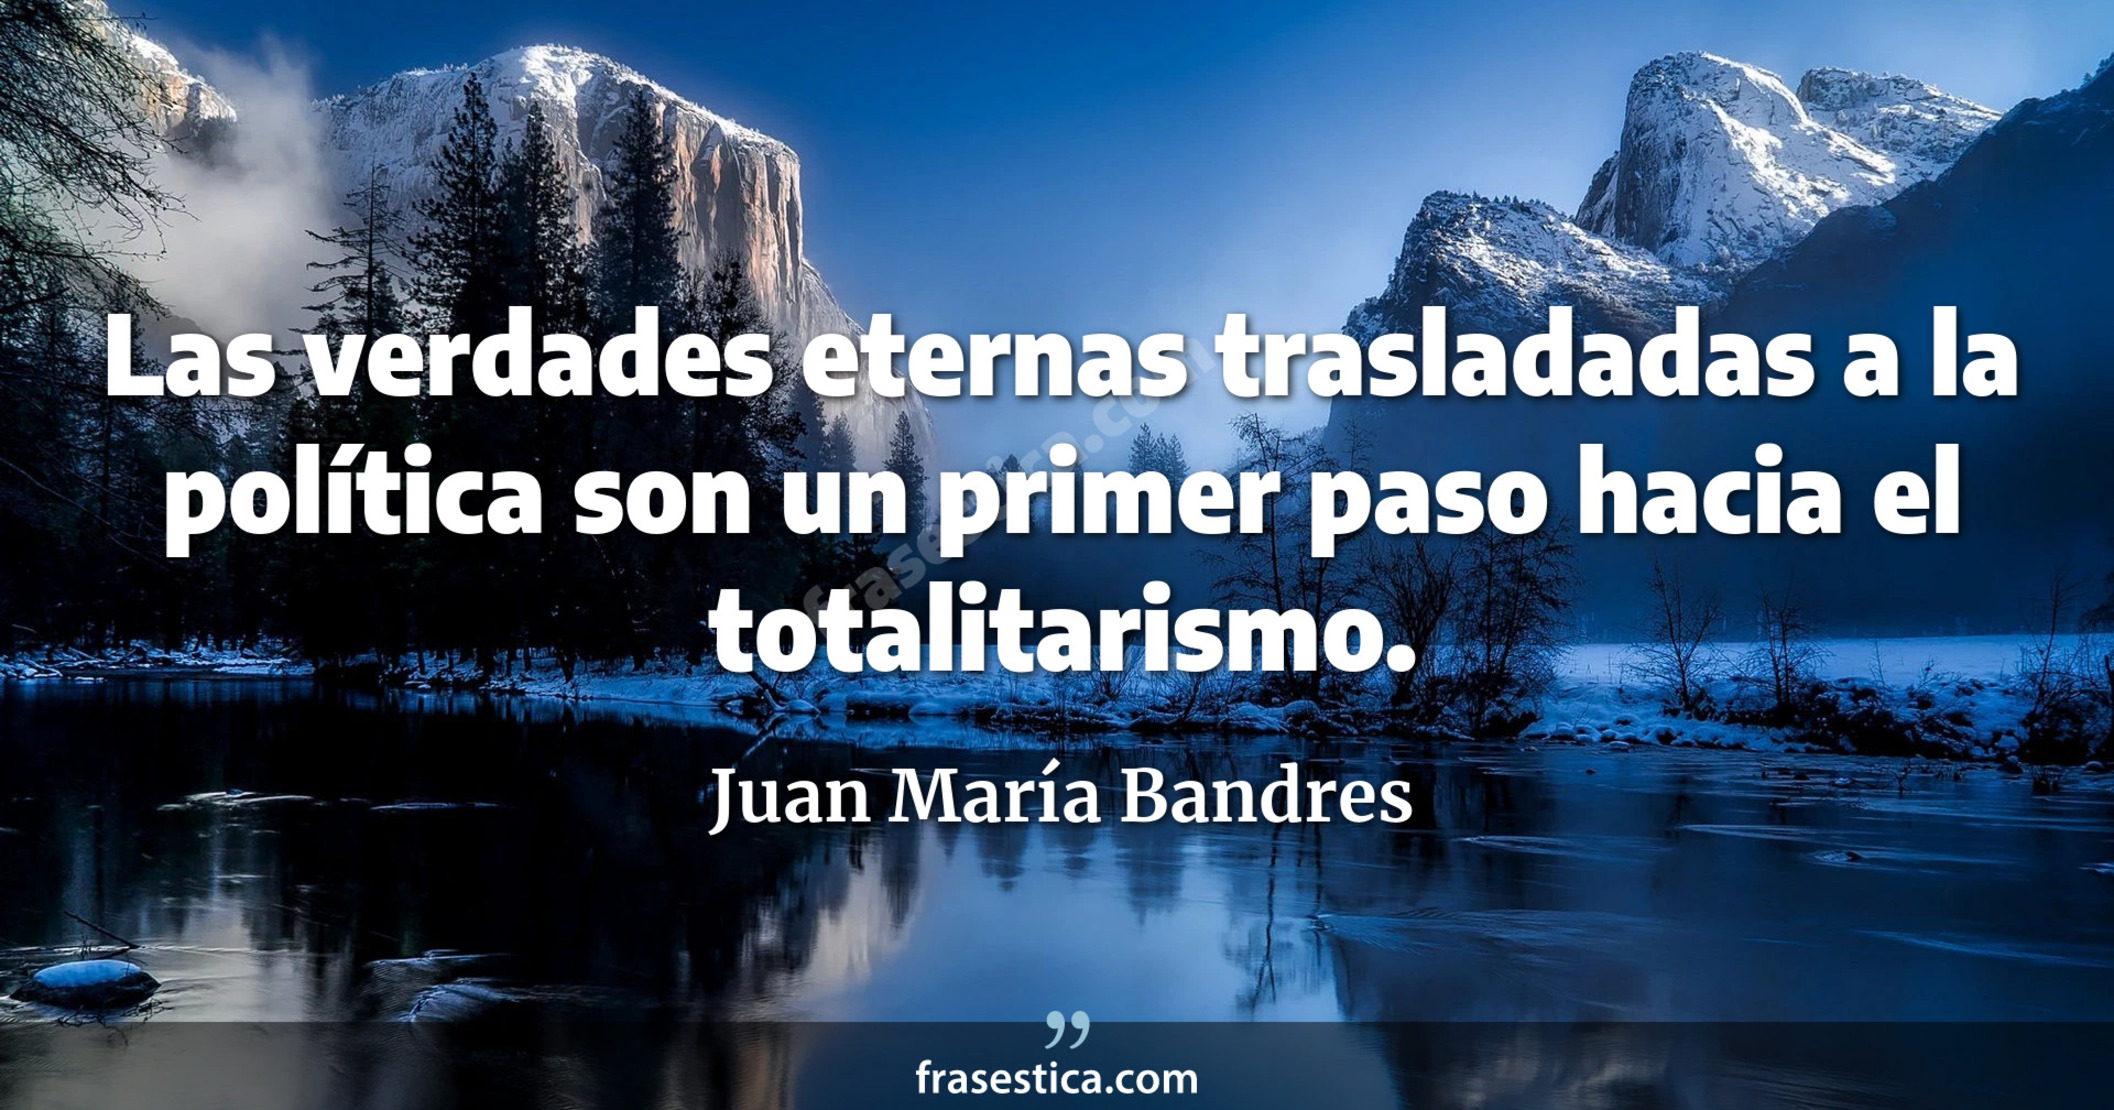 Las verdades eternas trasladadas a la política son un primer paso hacia el totalitarismo. - Juan María Bandres